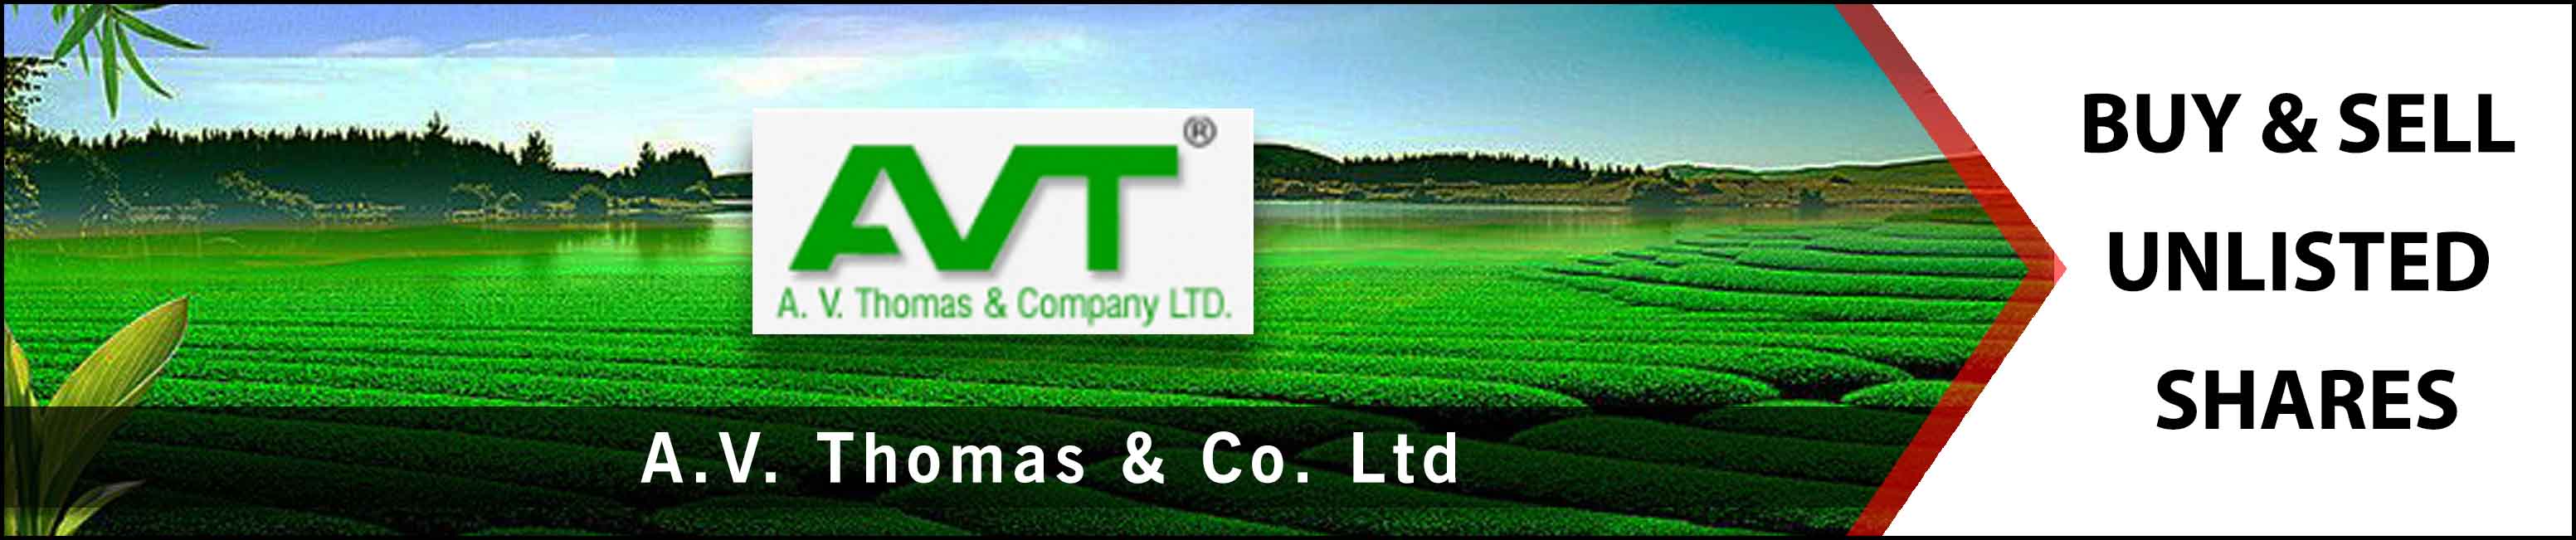 A V Thomas and Company Ltd